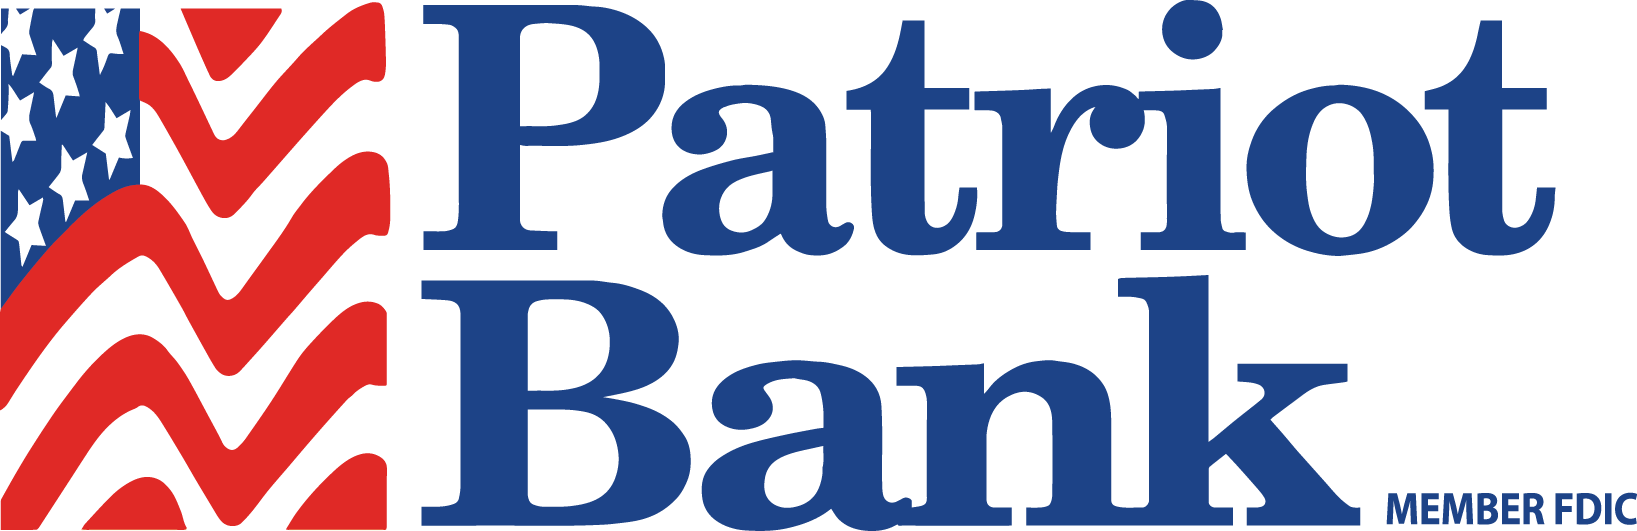 PatriotBankMemberFDIC_logo copy